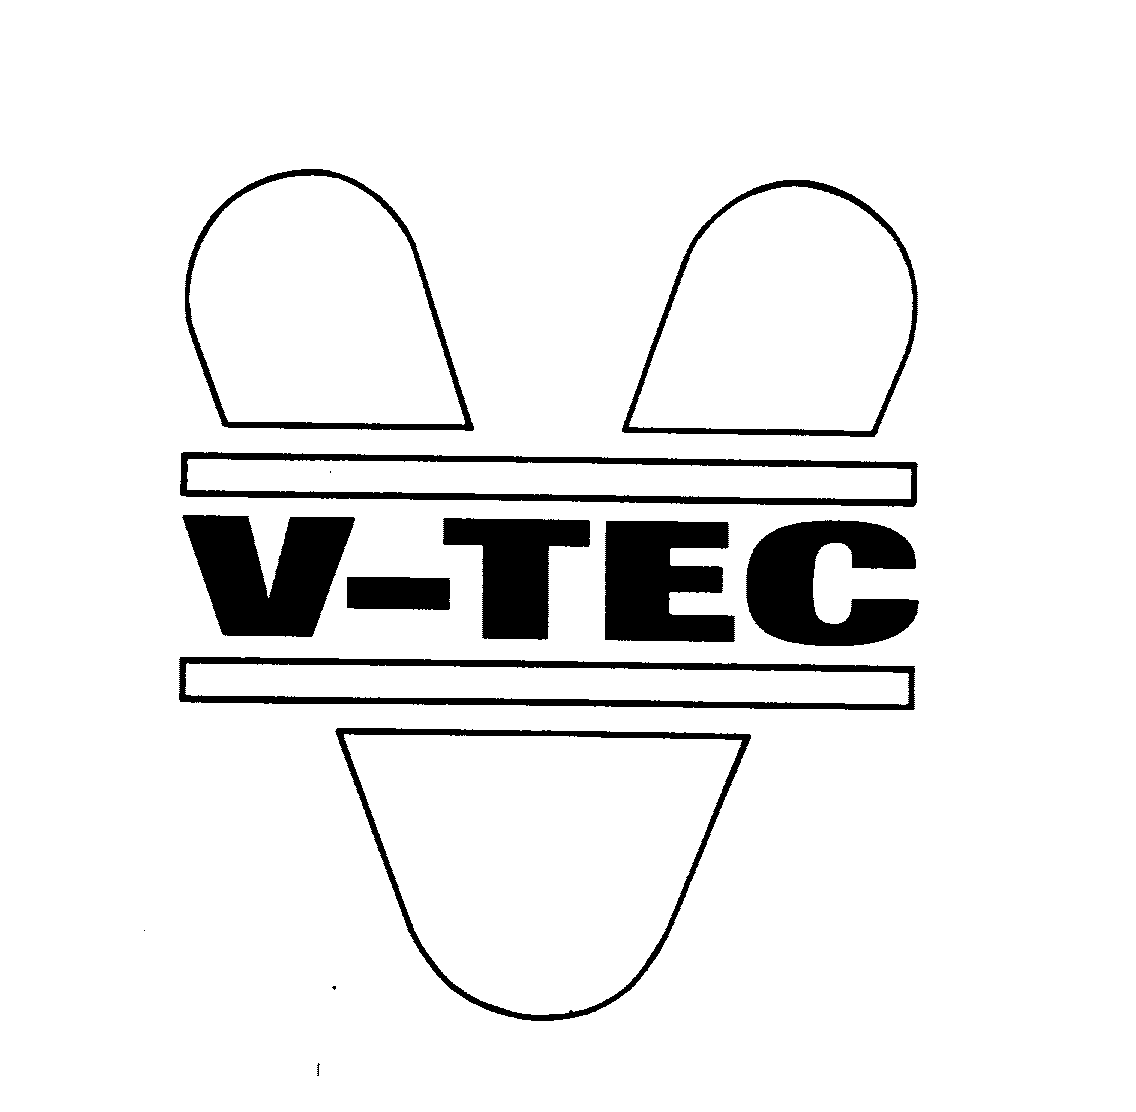 V-TEC